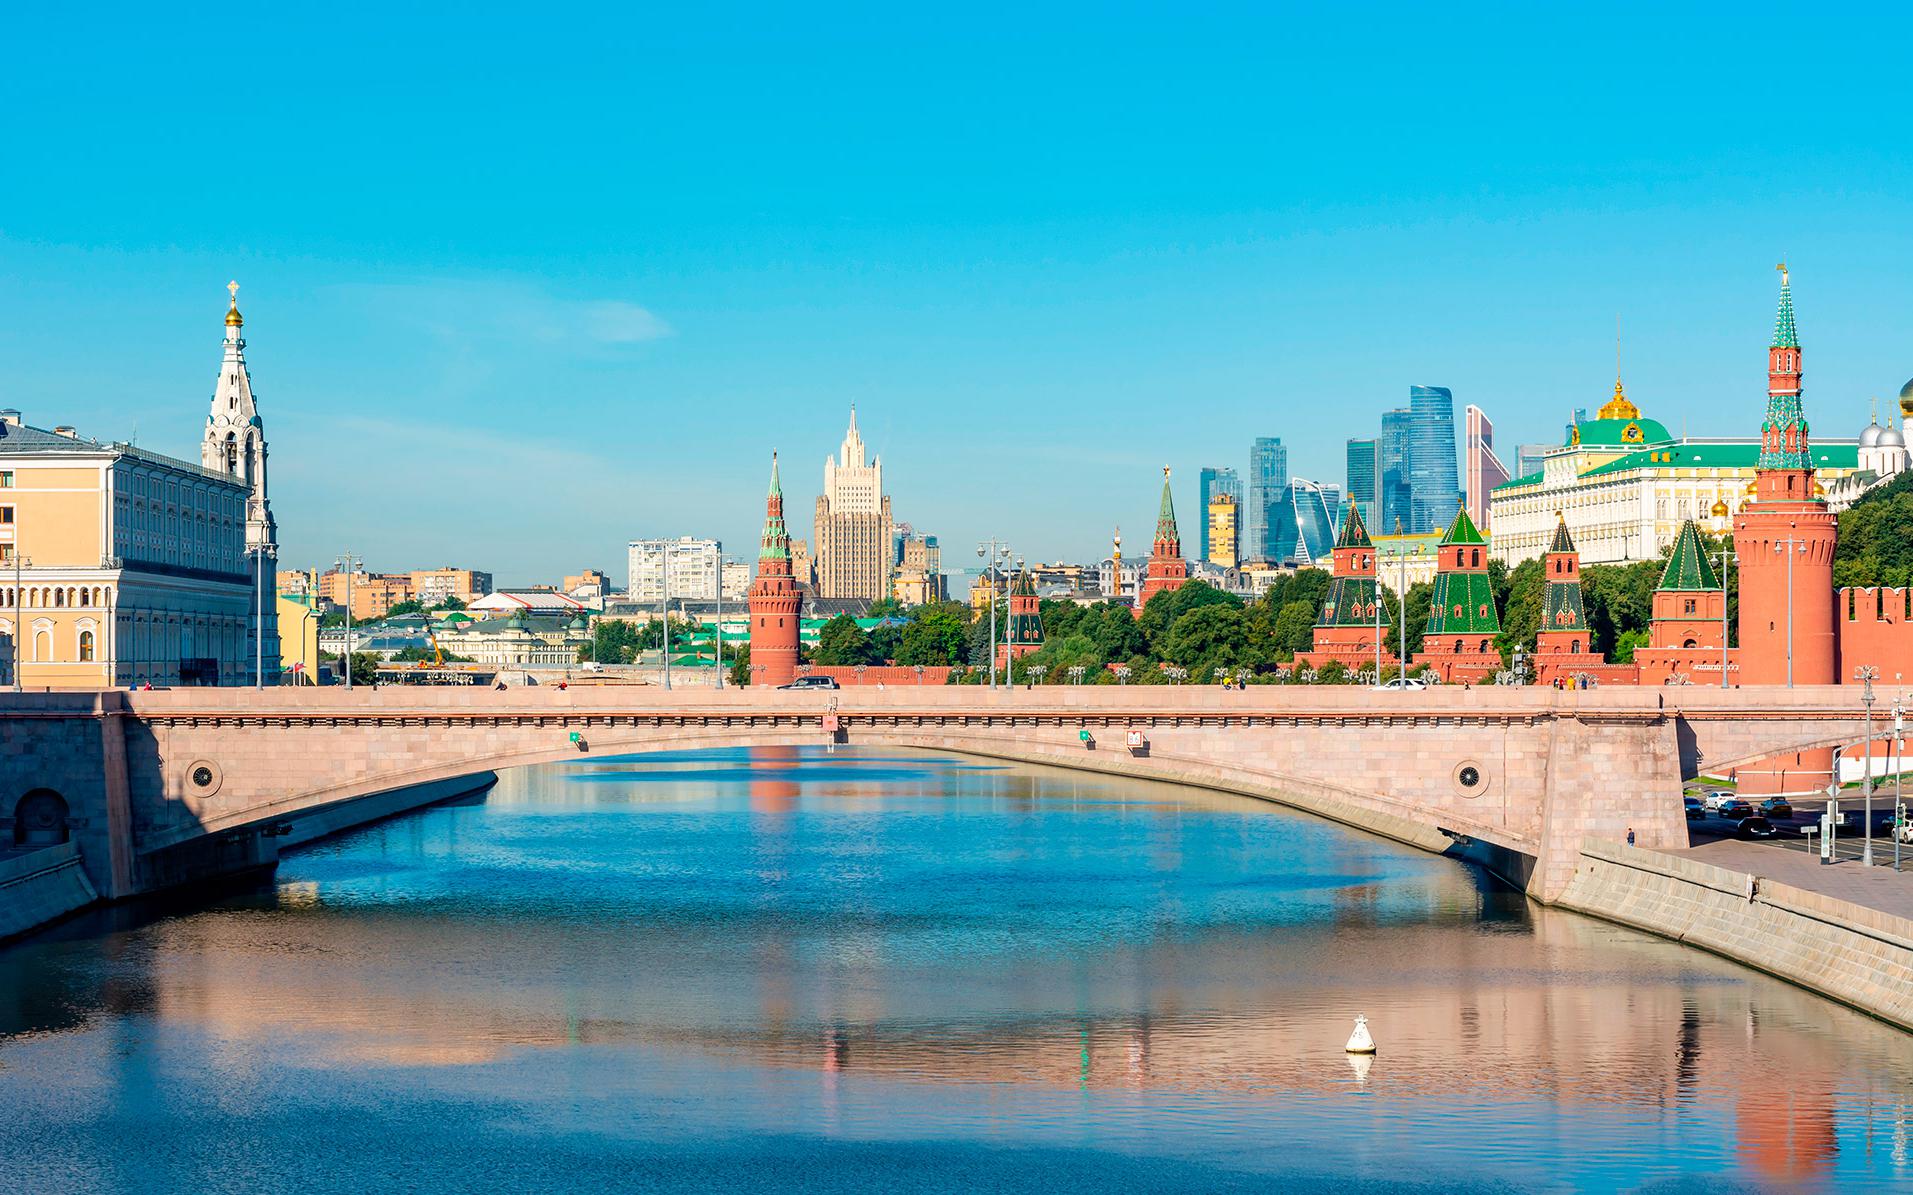 Вид на Большой Москворецкий мост, Кремлевскую и Софийскую набережные

